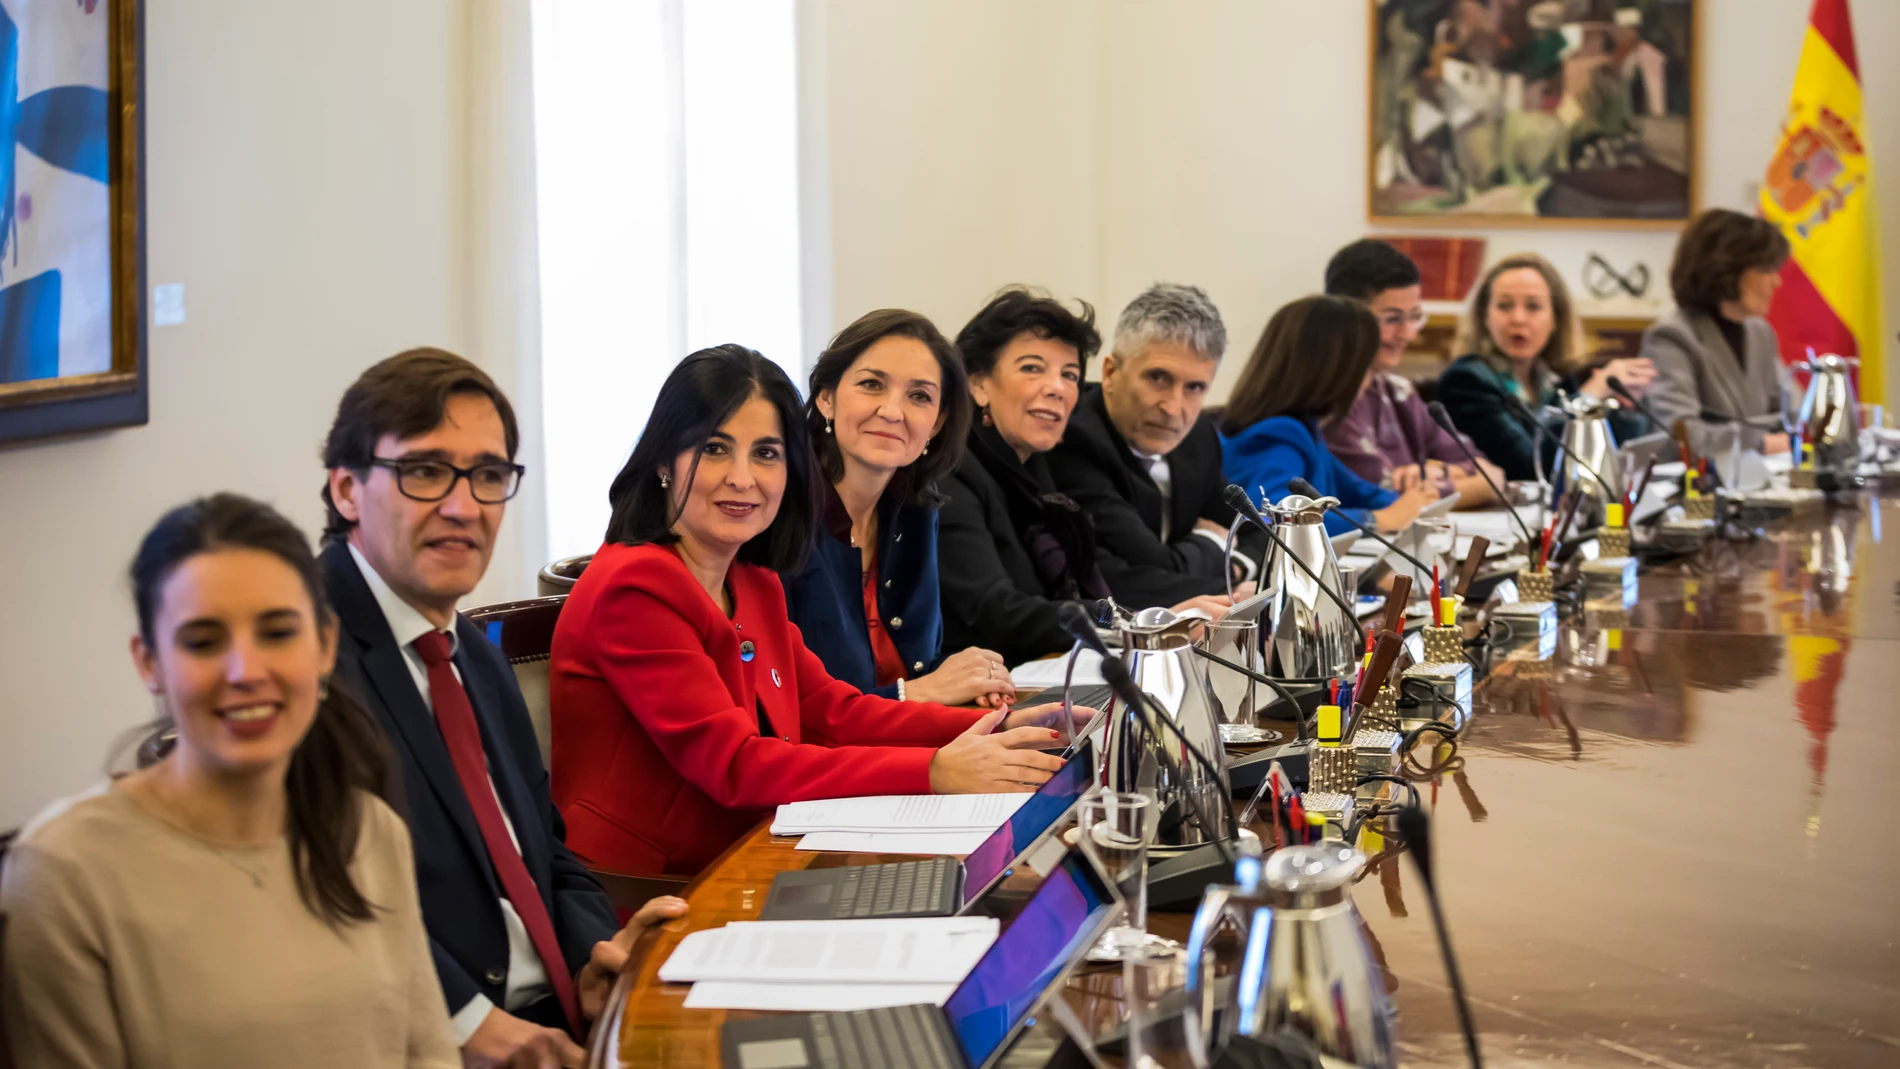 Algunos de los ministros del gobierno, entre ellos el de Sanidad, durante una reunión de Consejo de Ministros en La Moncloa.